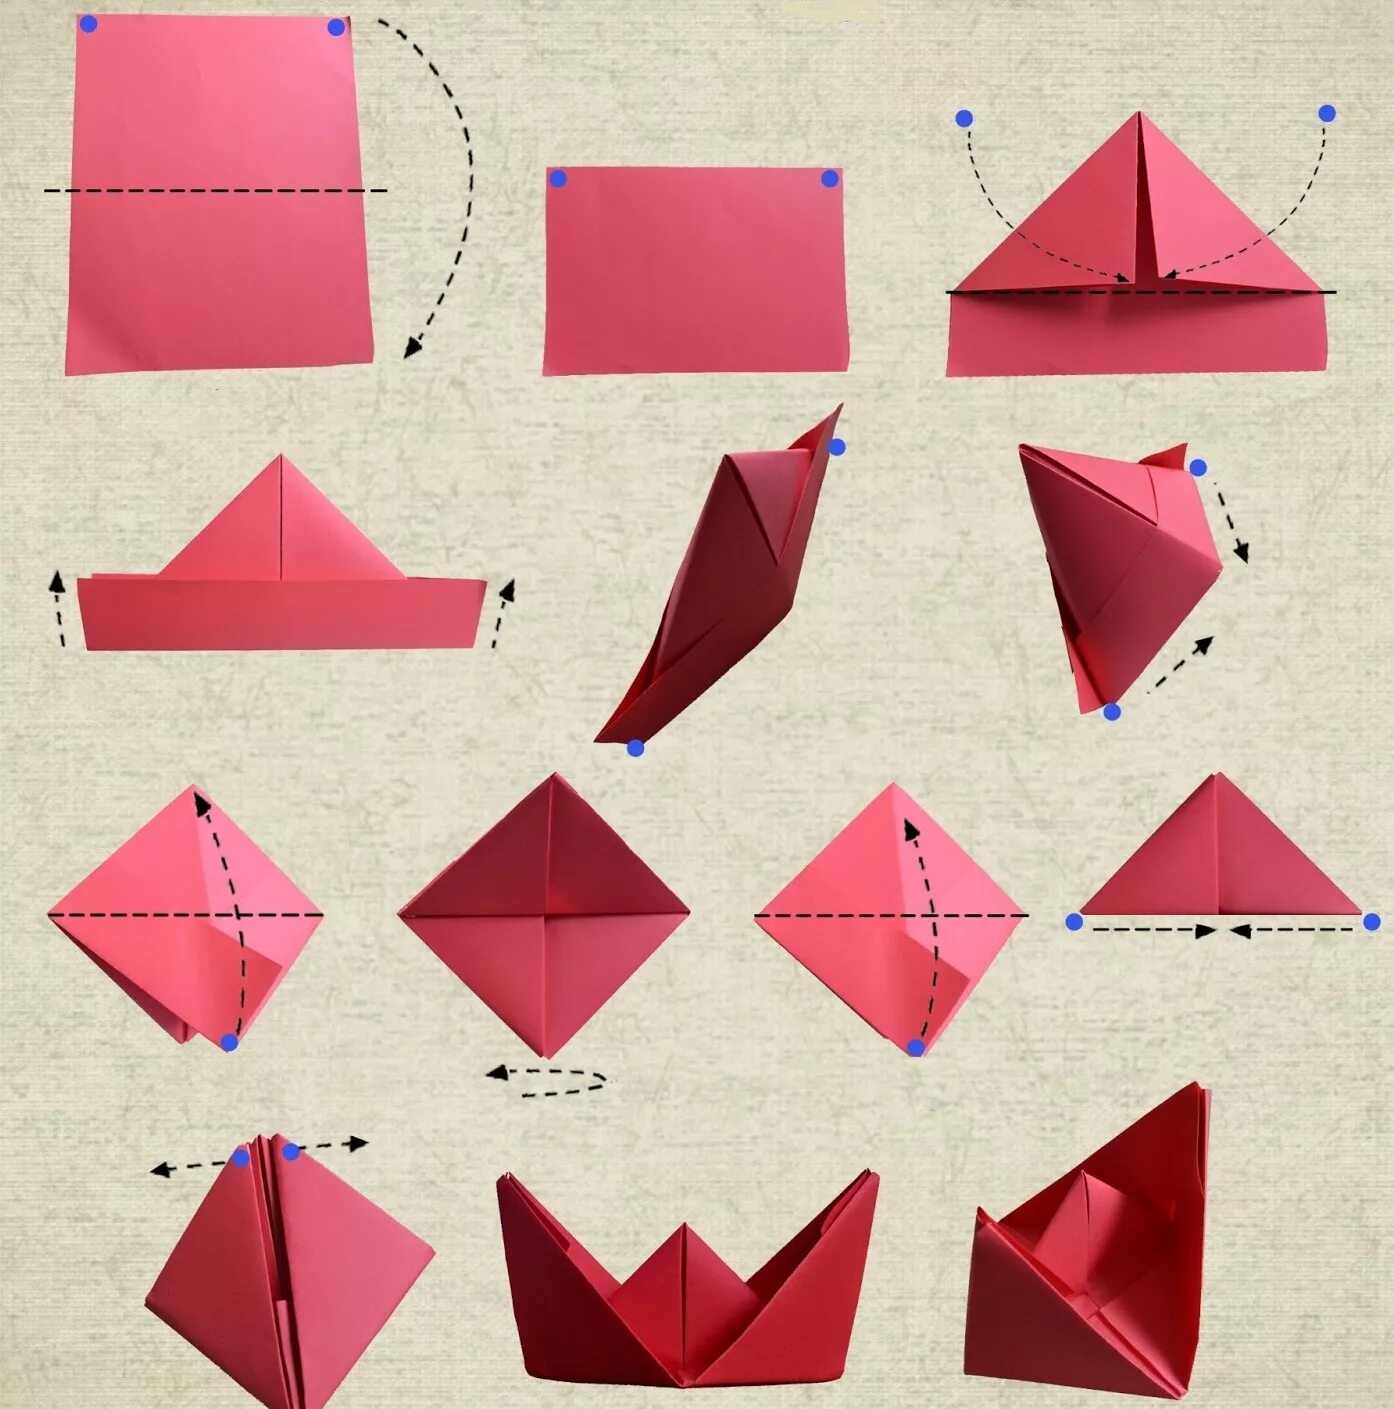 Кораблик из бумаги а4 для начинающих. Как делать кораблик из бумаги. Оригами из бумаги для начинающих поэтапно кораблик. Бумажный кораблик своими руками пошагово из листа. Как сделать кораблик из а4 из бумаги своими руками.